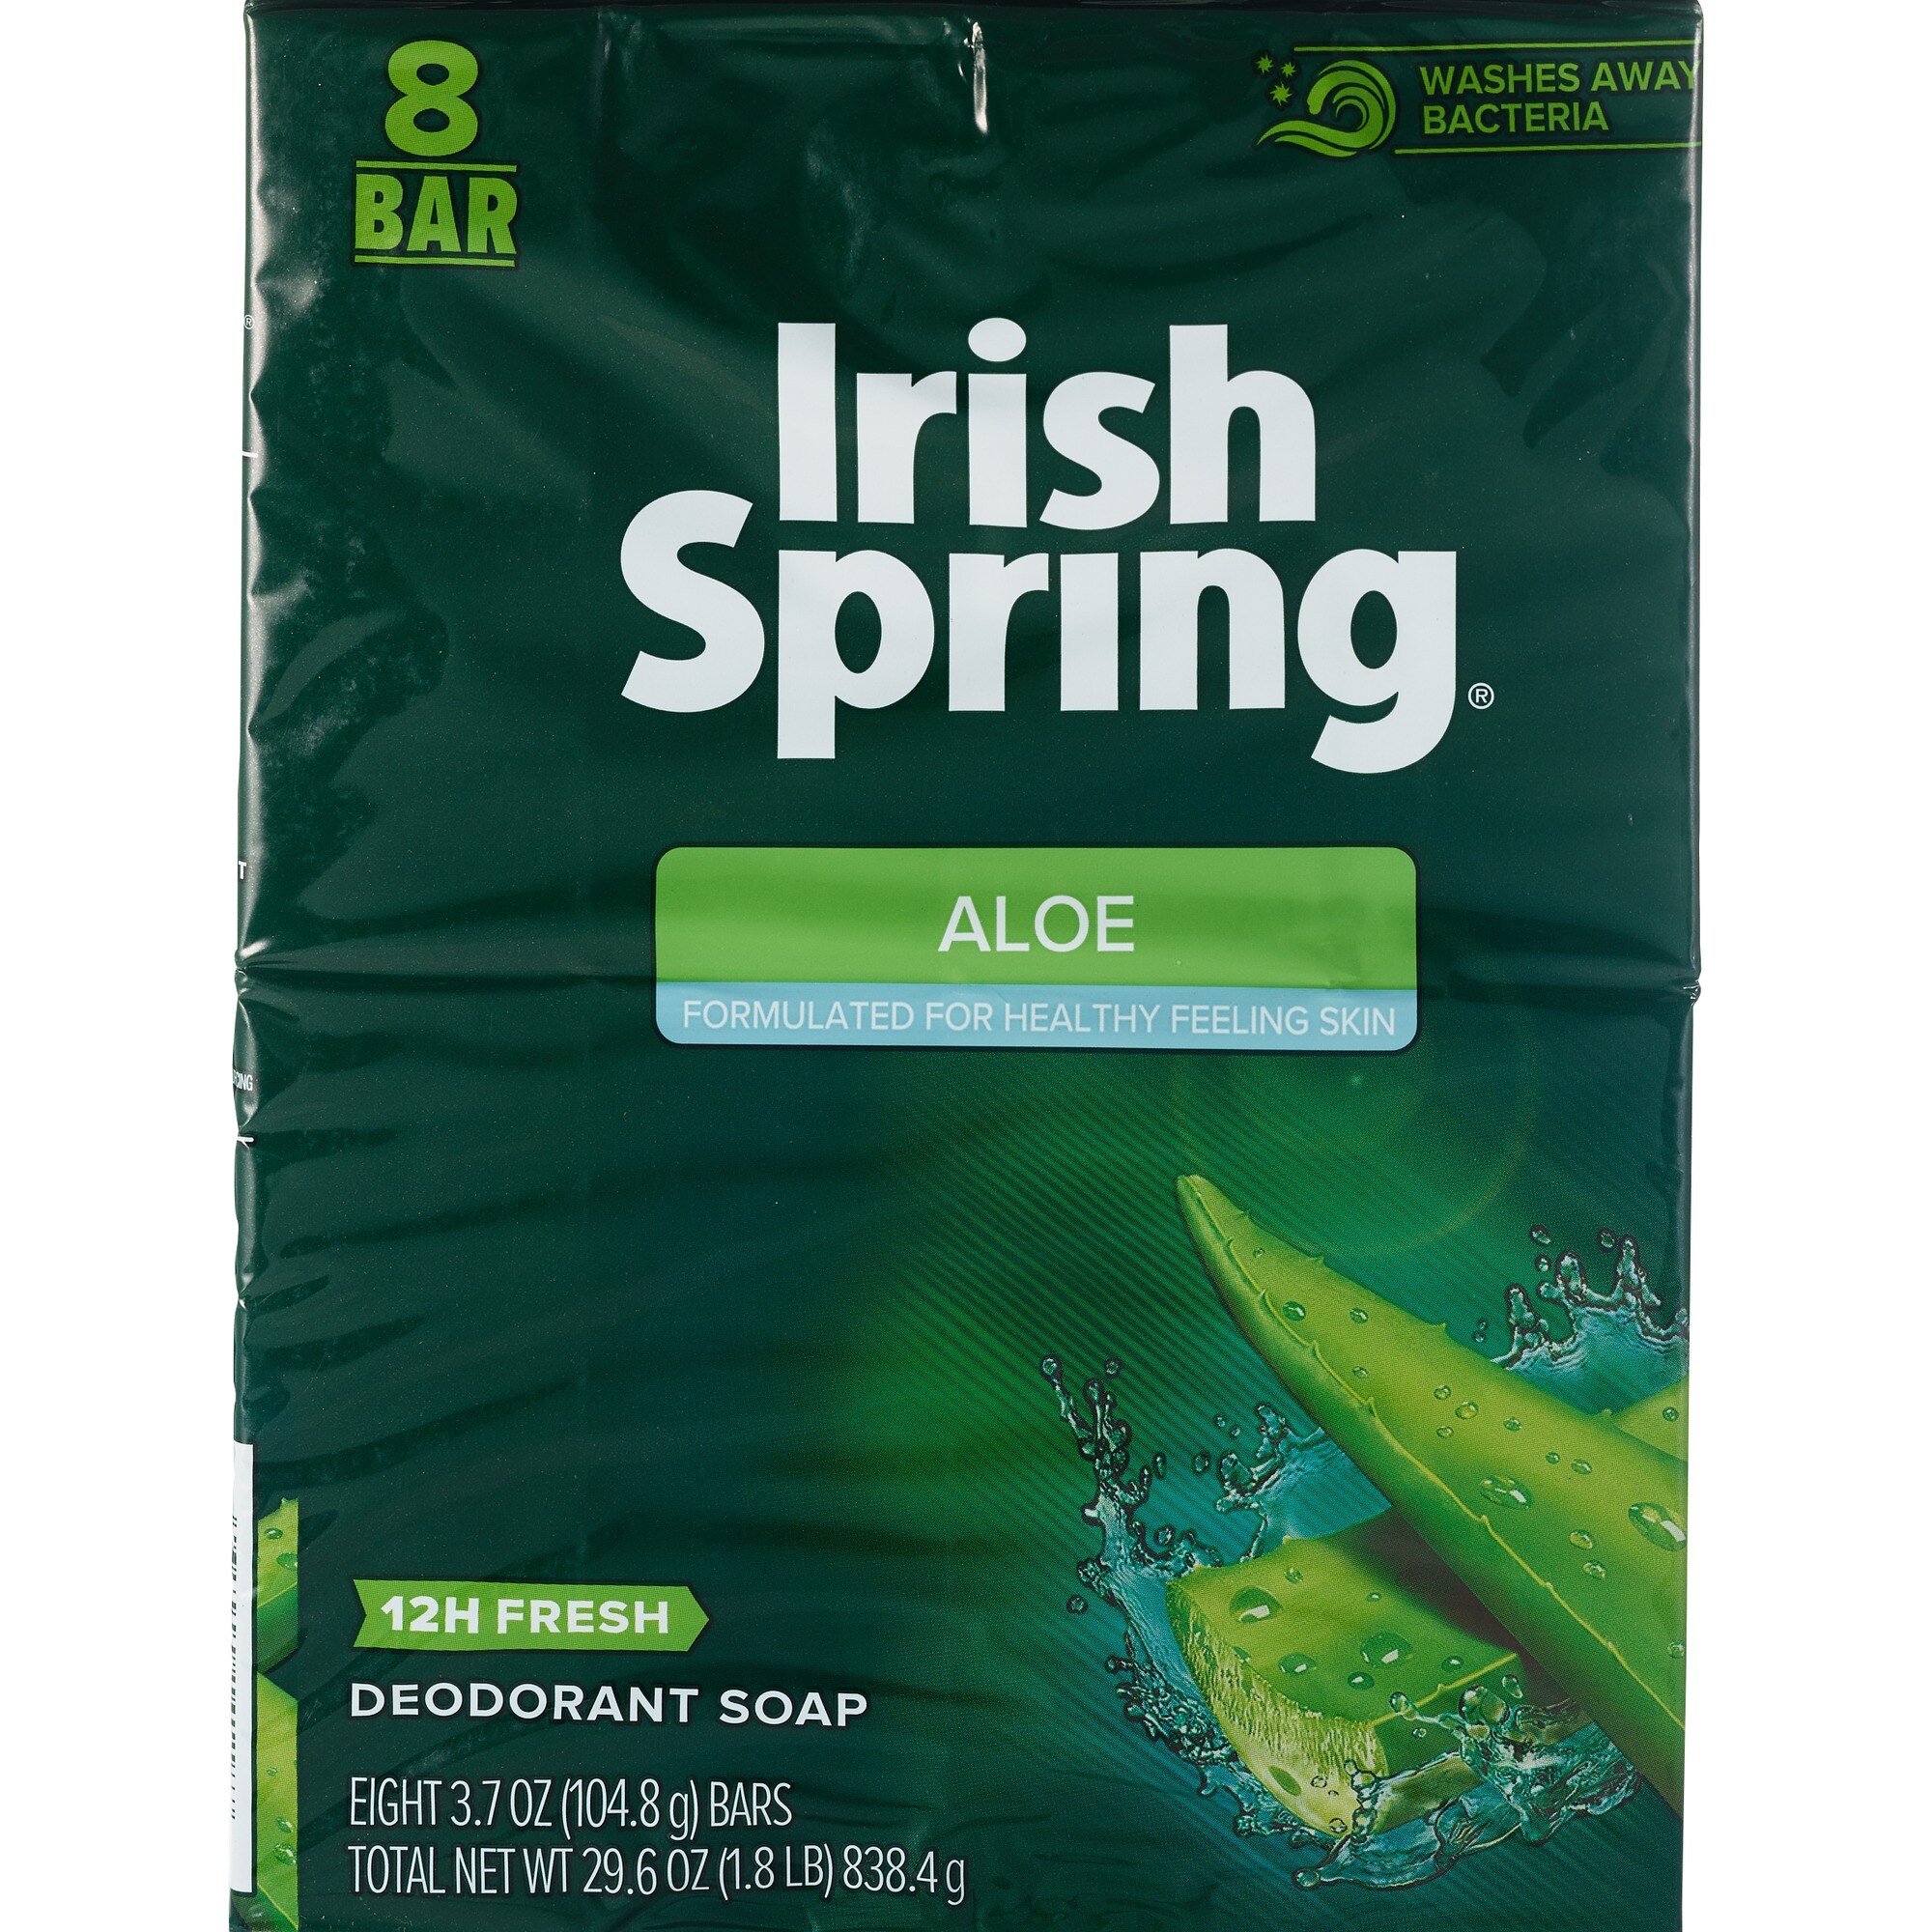 Irish Spring Bar Soap, Aloe, 8 ct - 3.7 oz | CVS